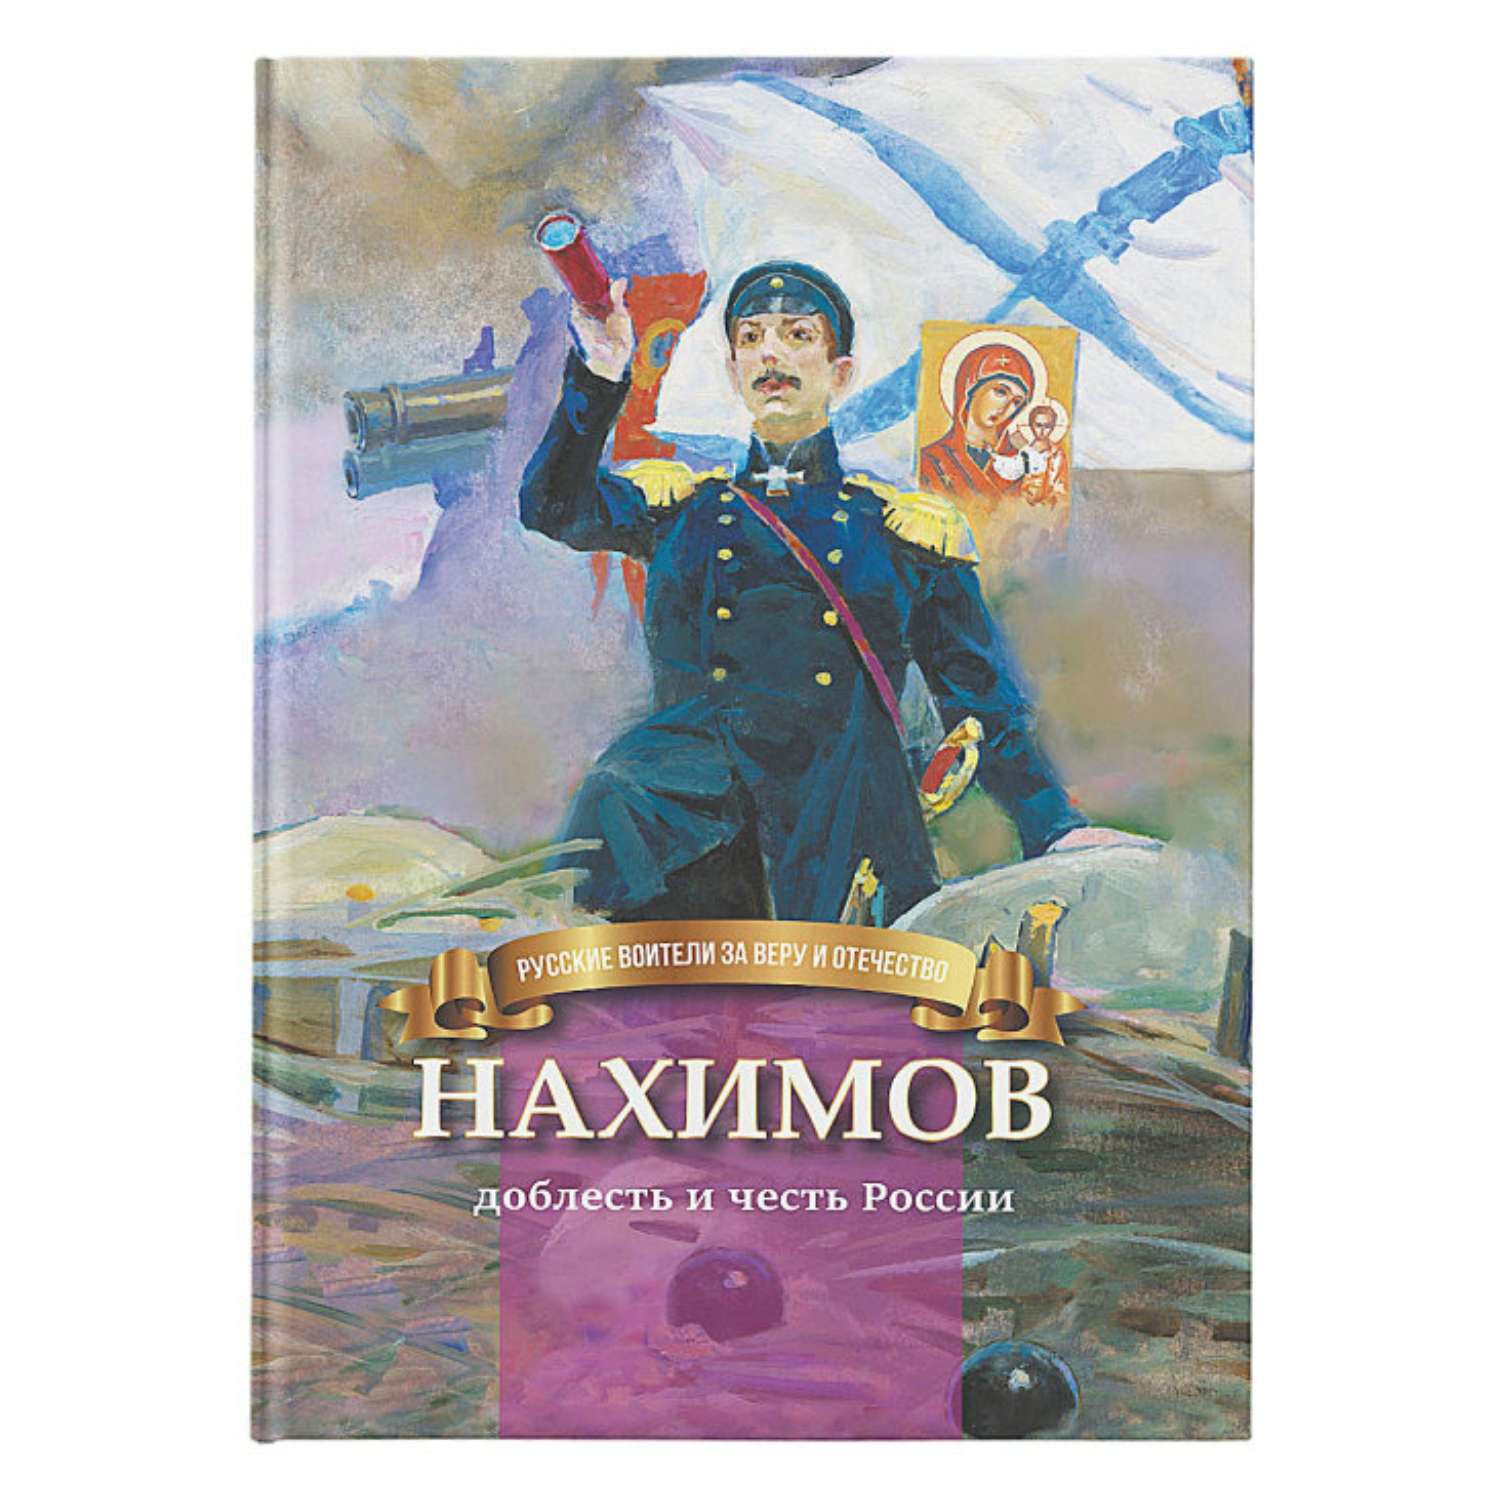 Книга Символик Нахимов-доблесть и честь России. Биография для детей - фото 1